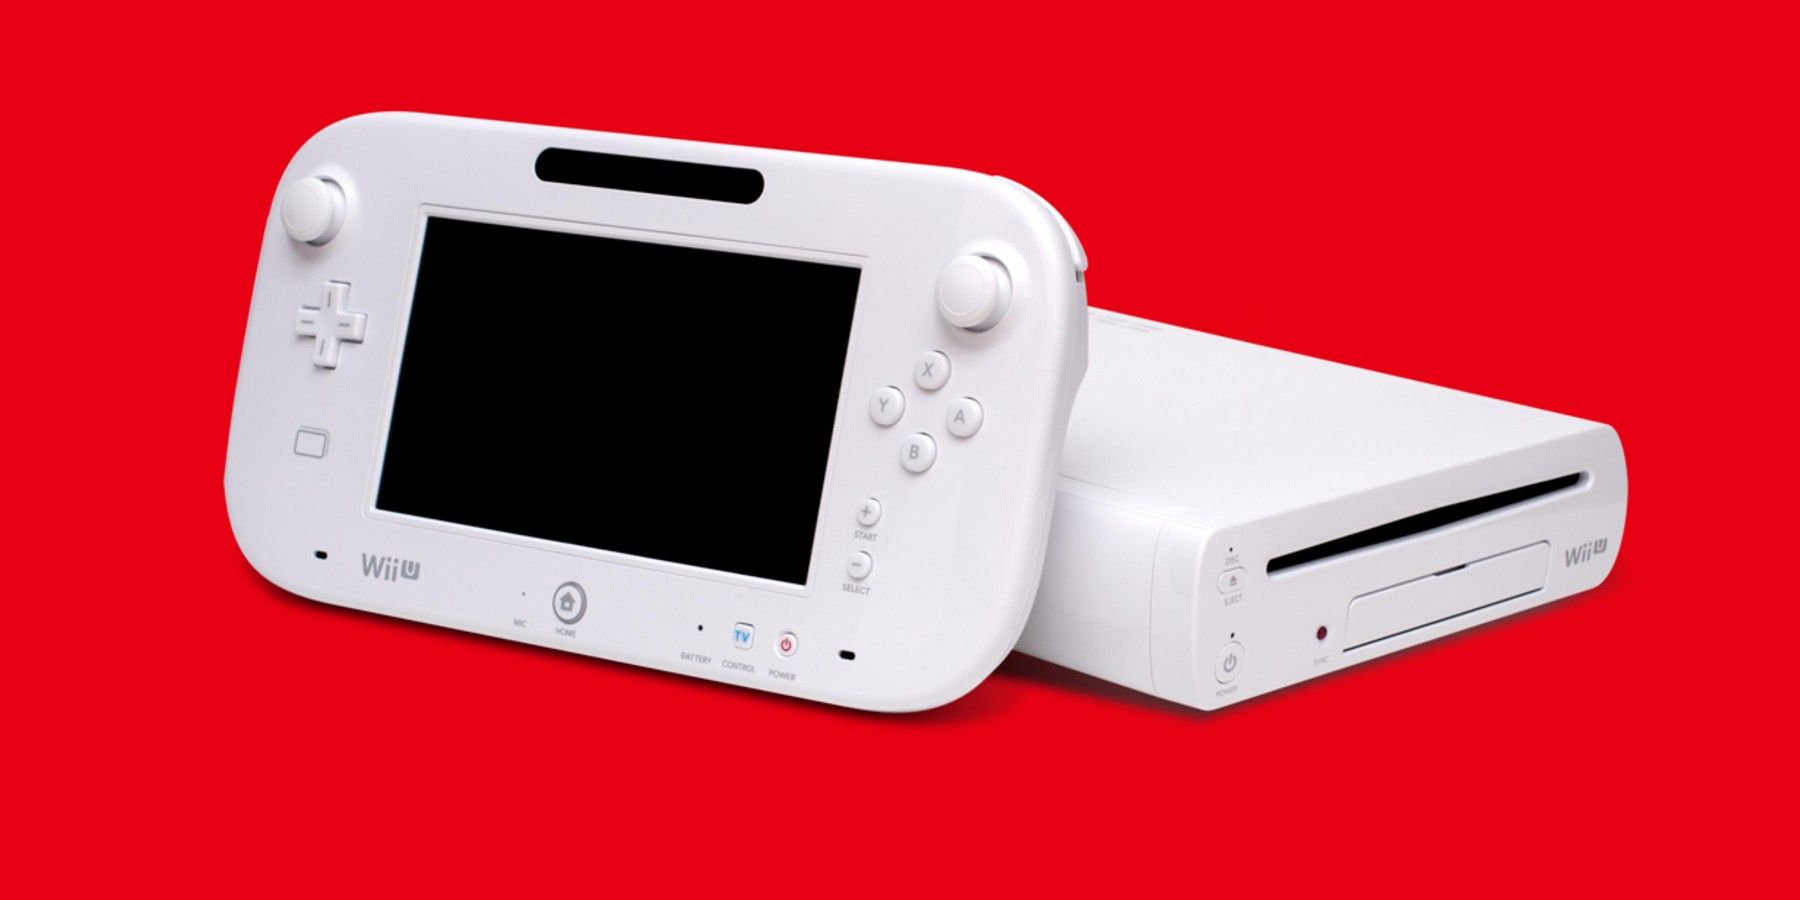 wii-u-white-console-gamepad-red-background